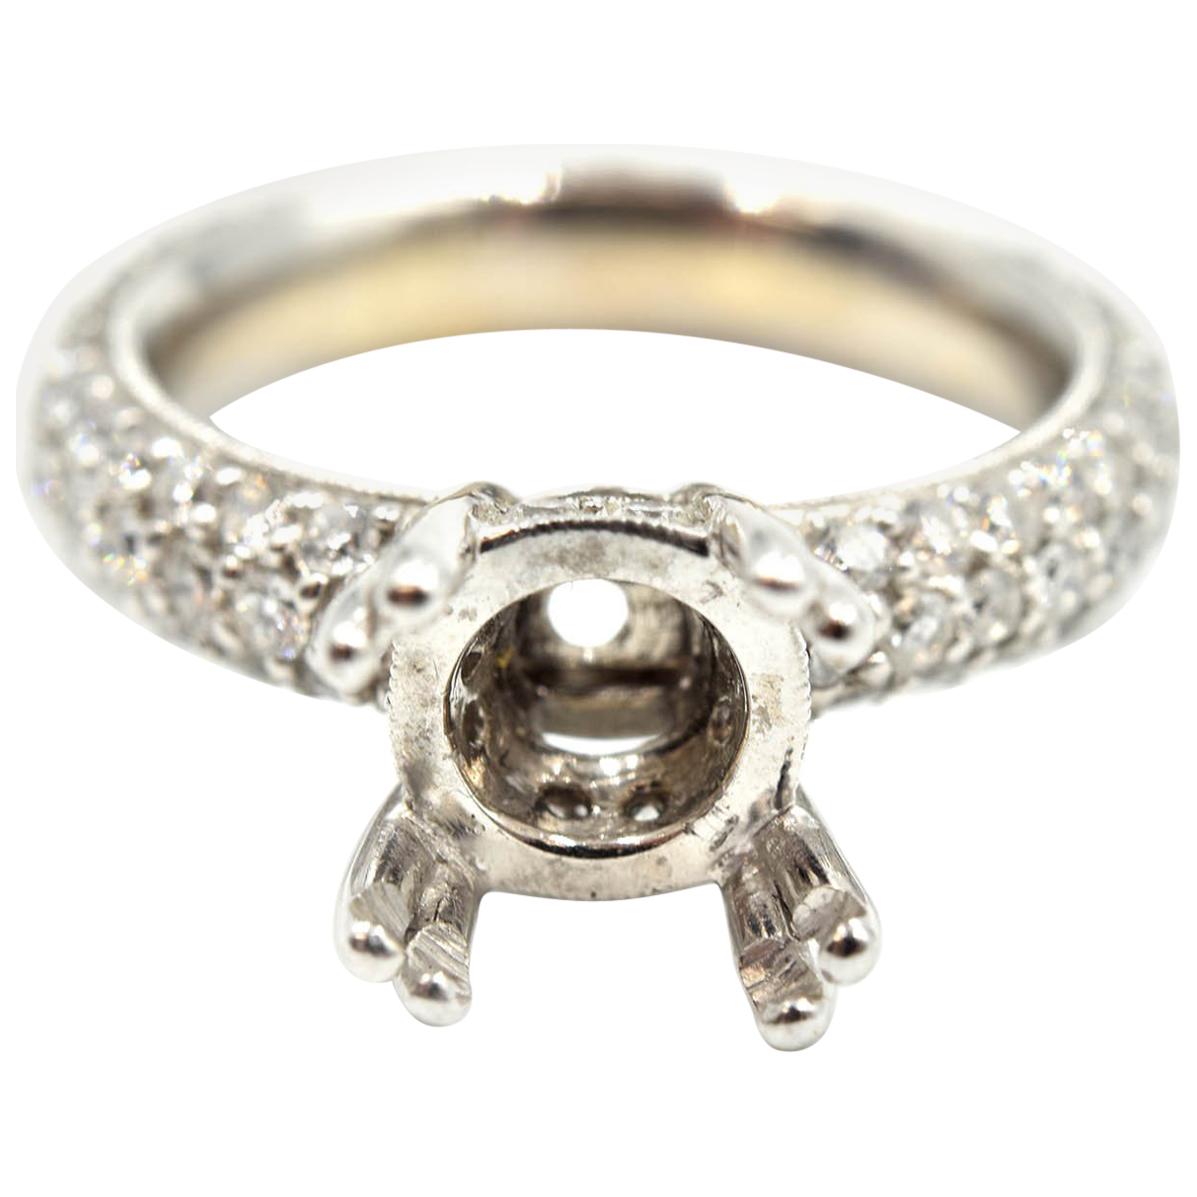 1.57 Carat Diamond 18 Karat White Gold Semi-Mount Engagement Ring